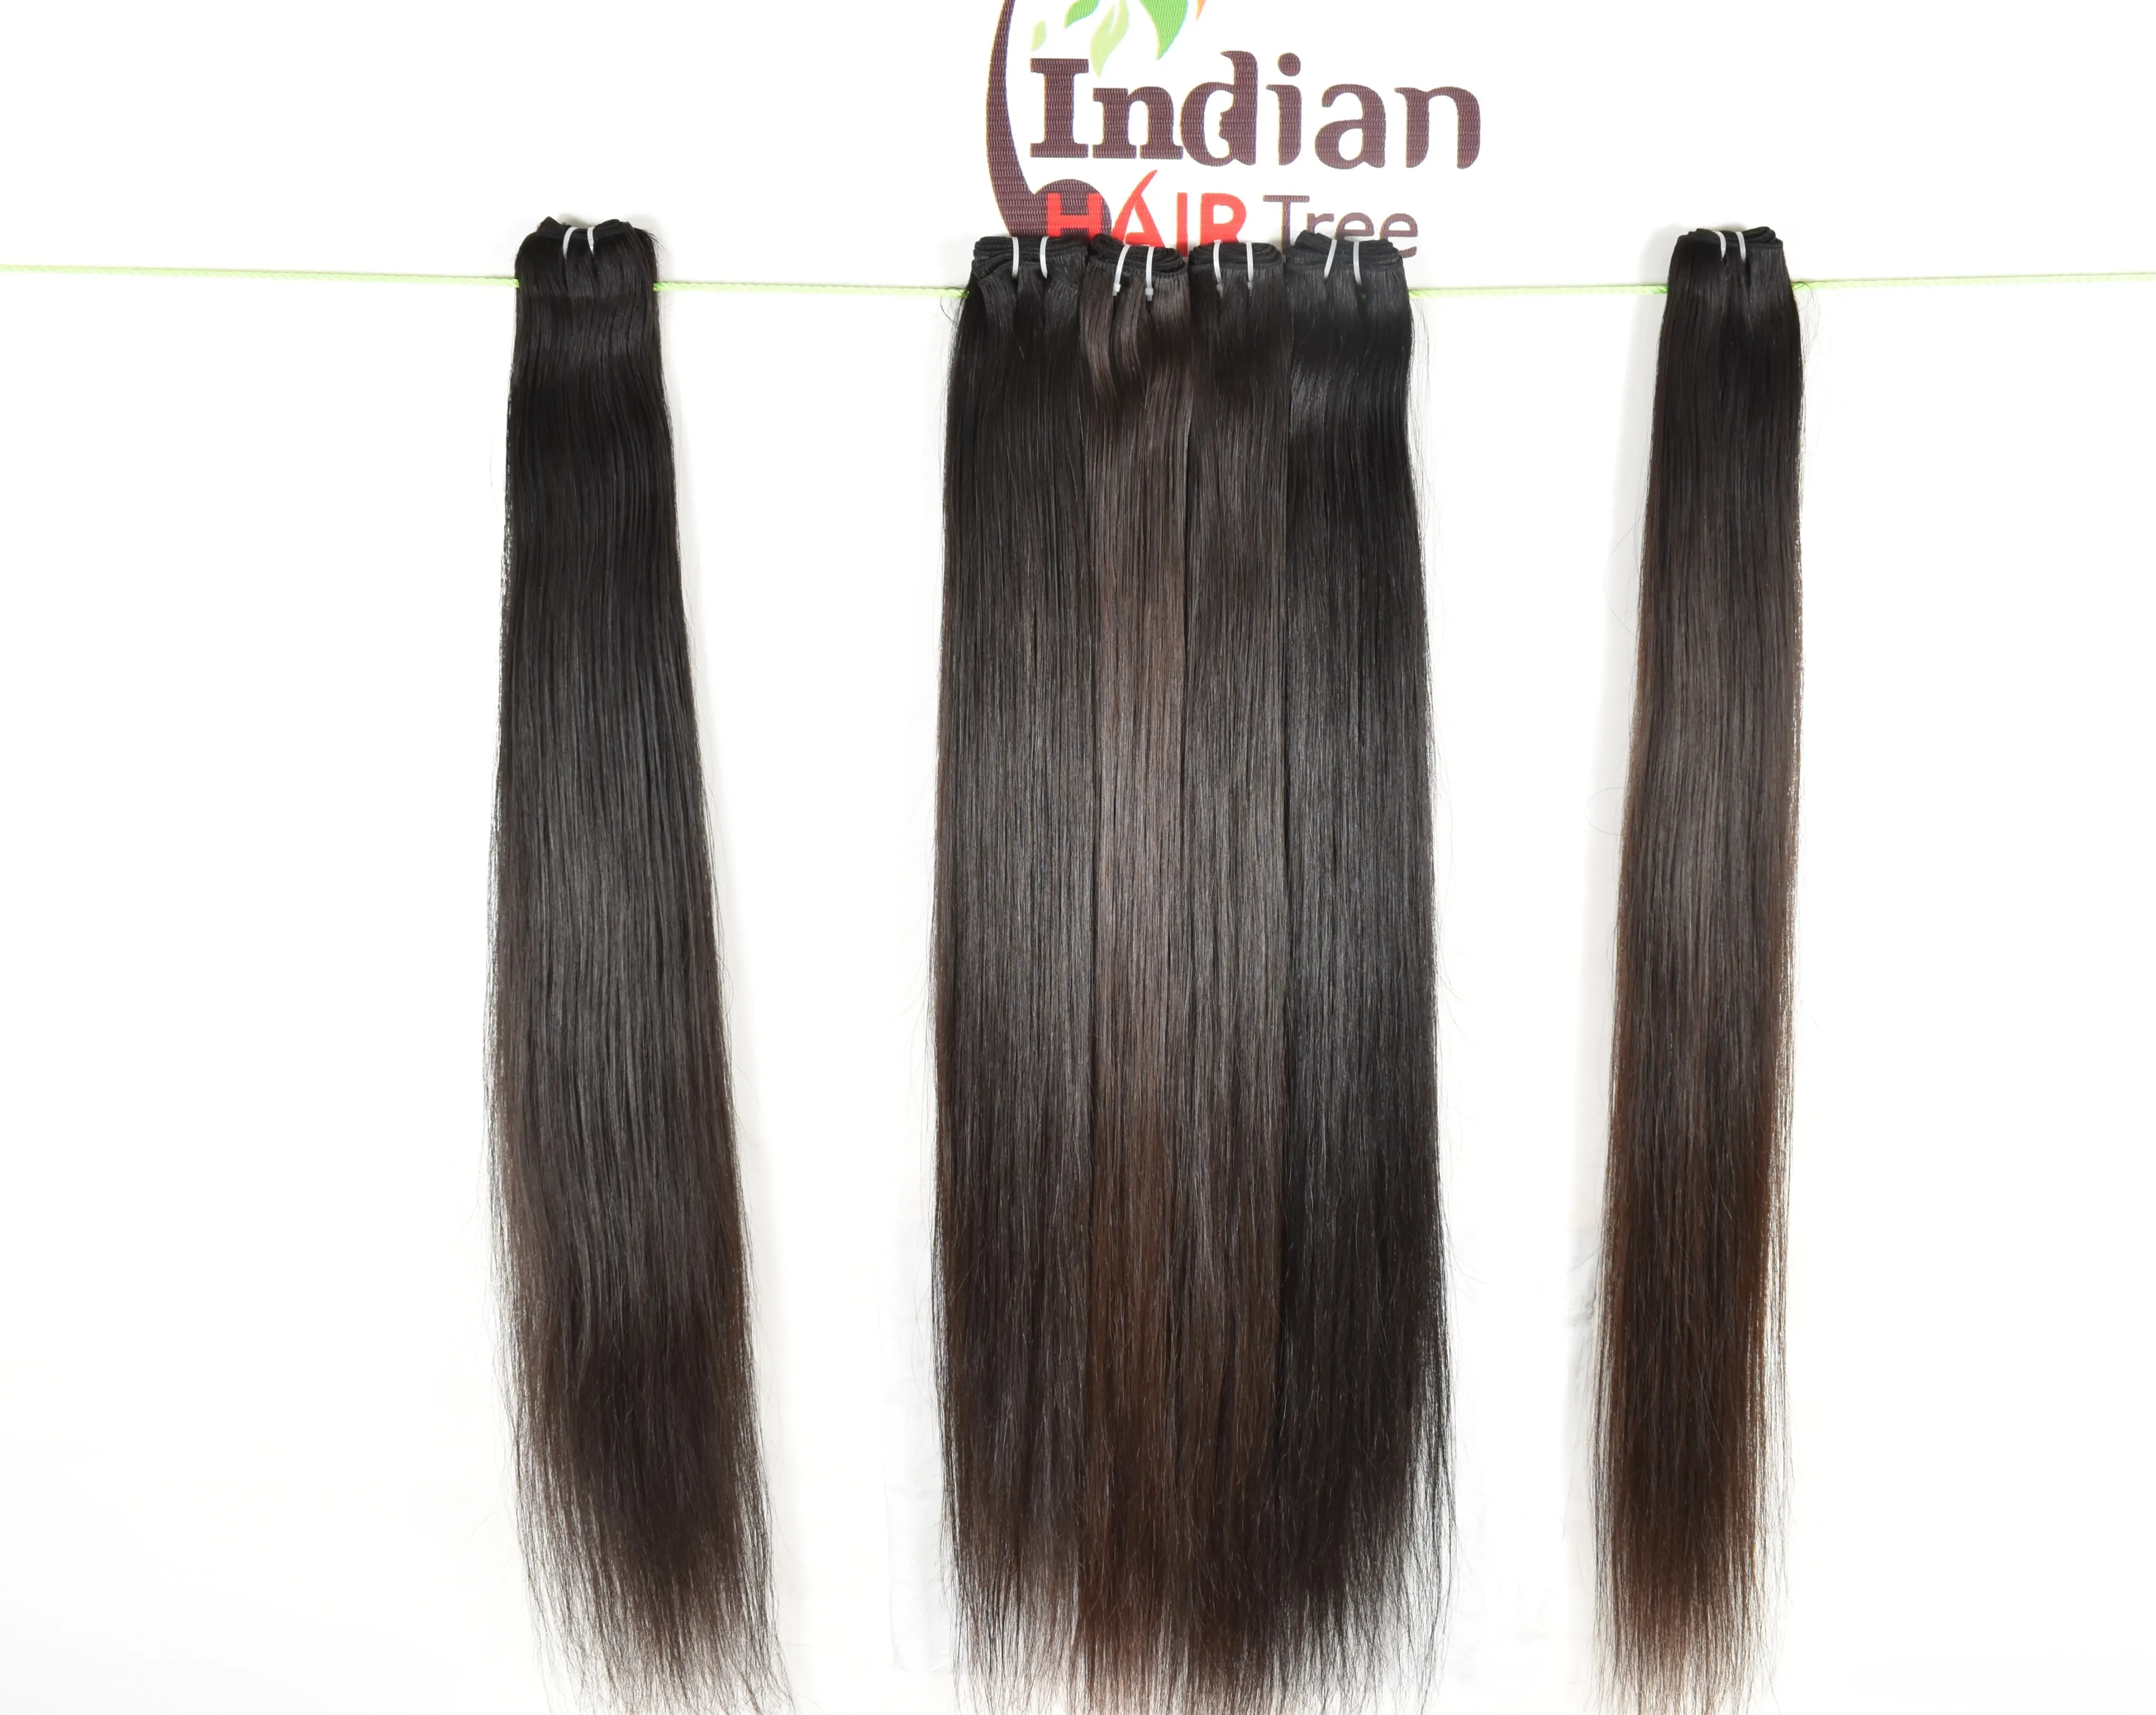 وصلات شعر ريمي فيرجن طبيعي 100% ماليزي صناعية مموج وشعر طبيعي هندي طويل ناعم ومفرود